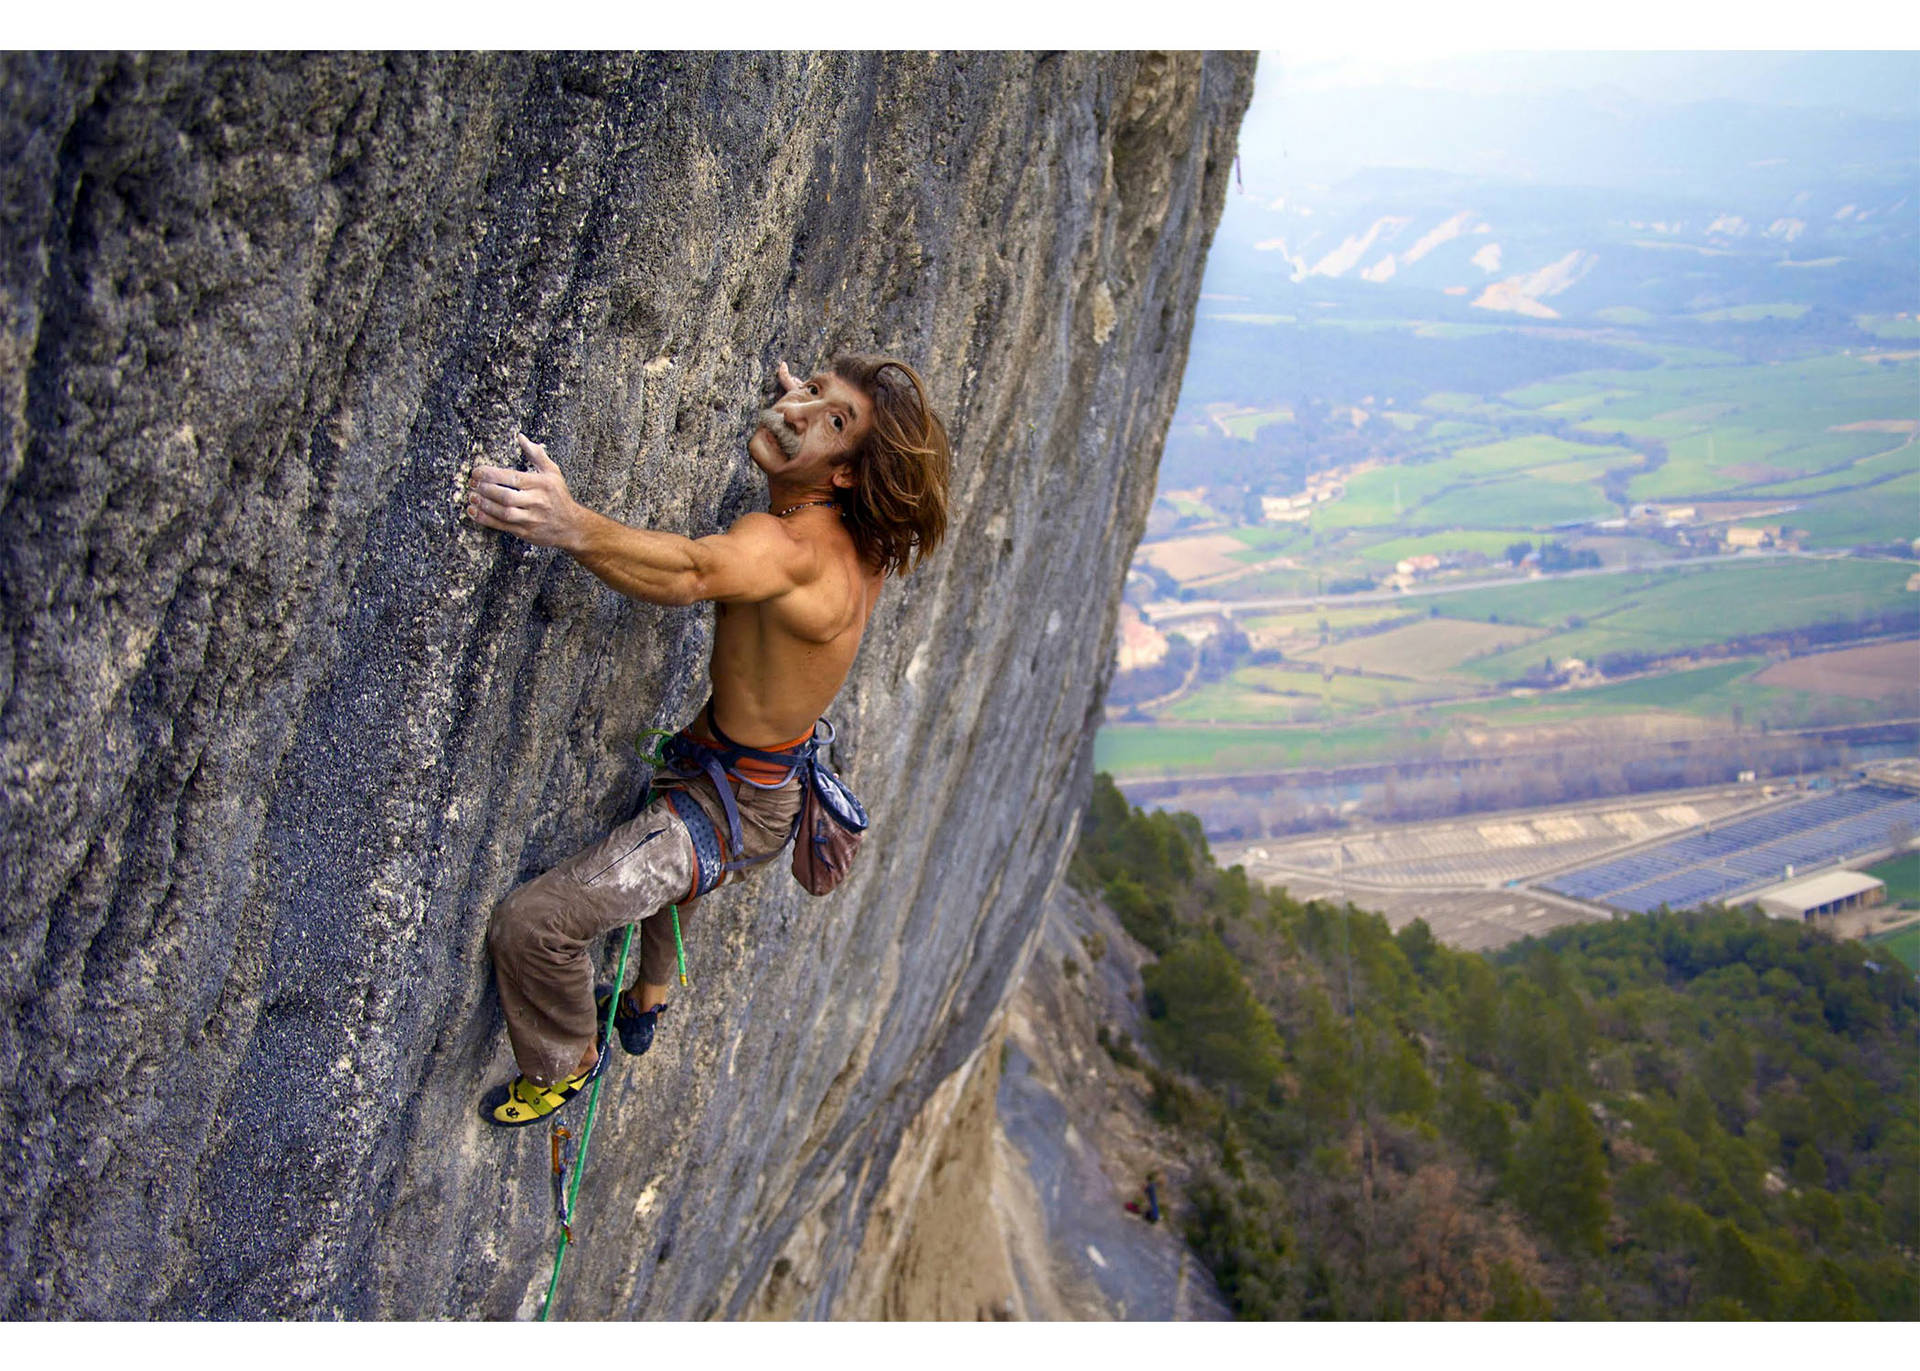 Topless Man Rock Climbing Wallpaper